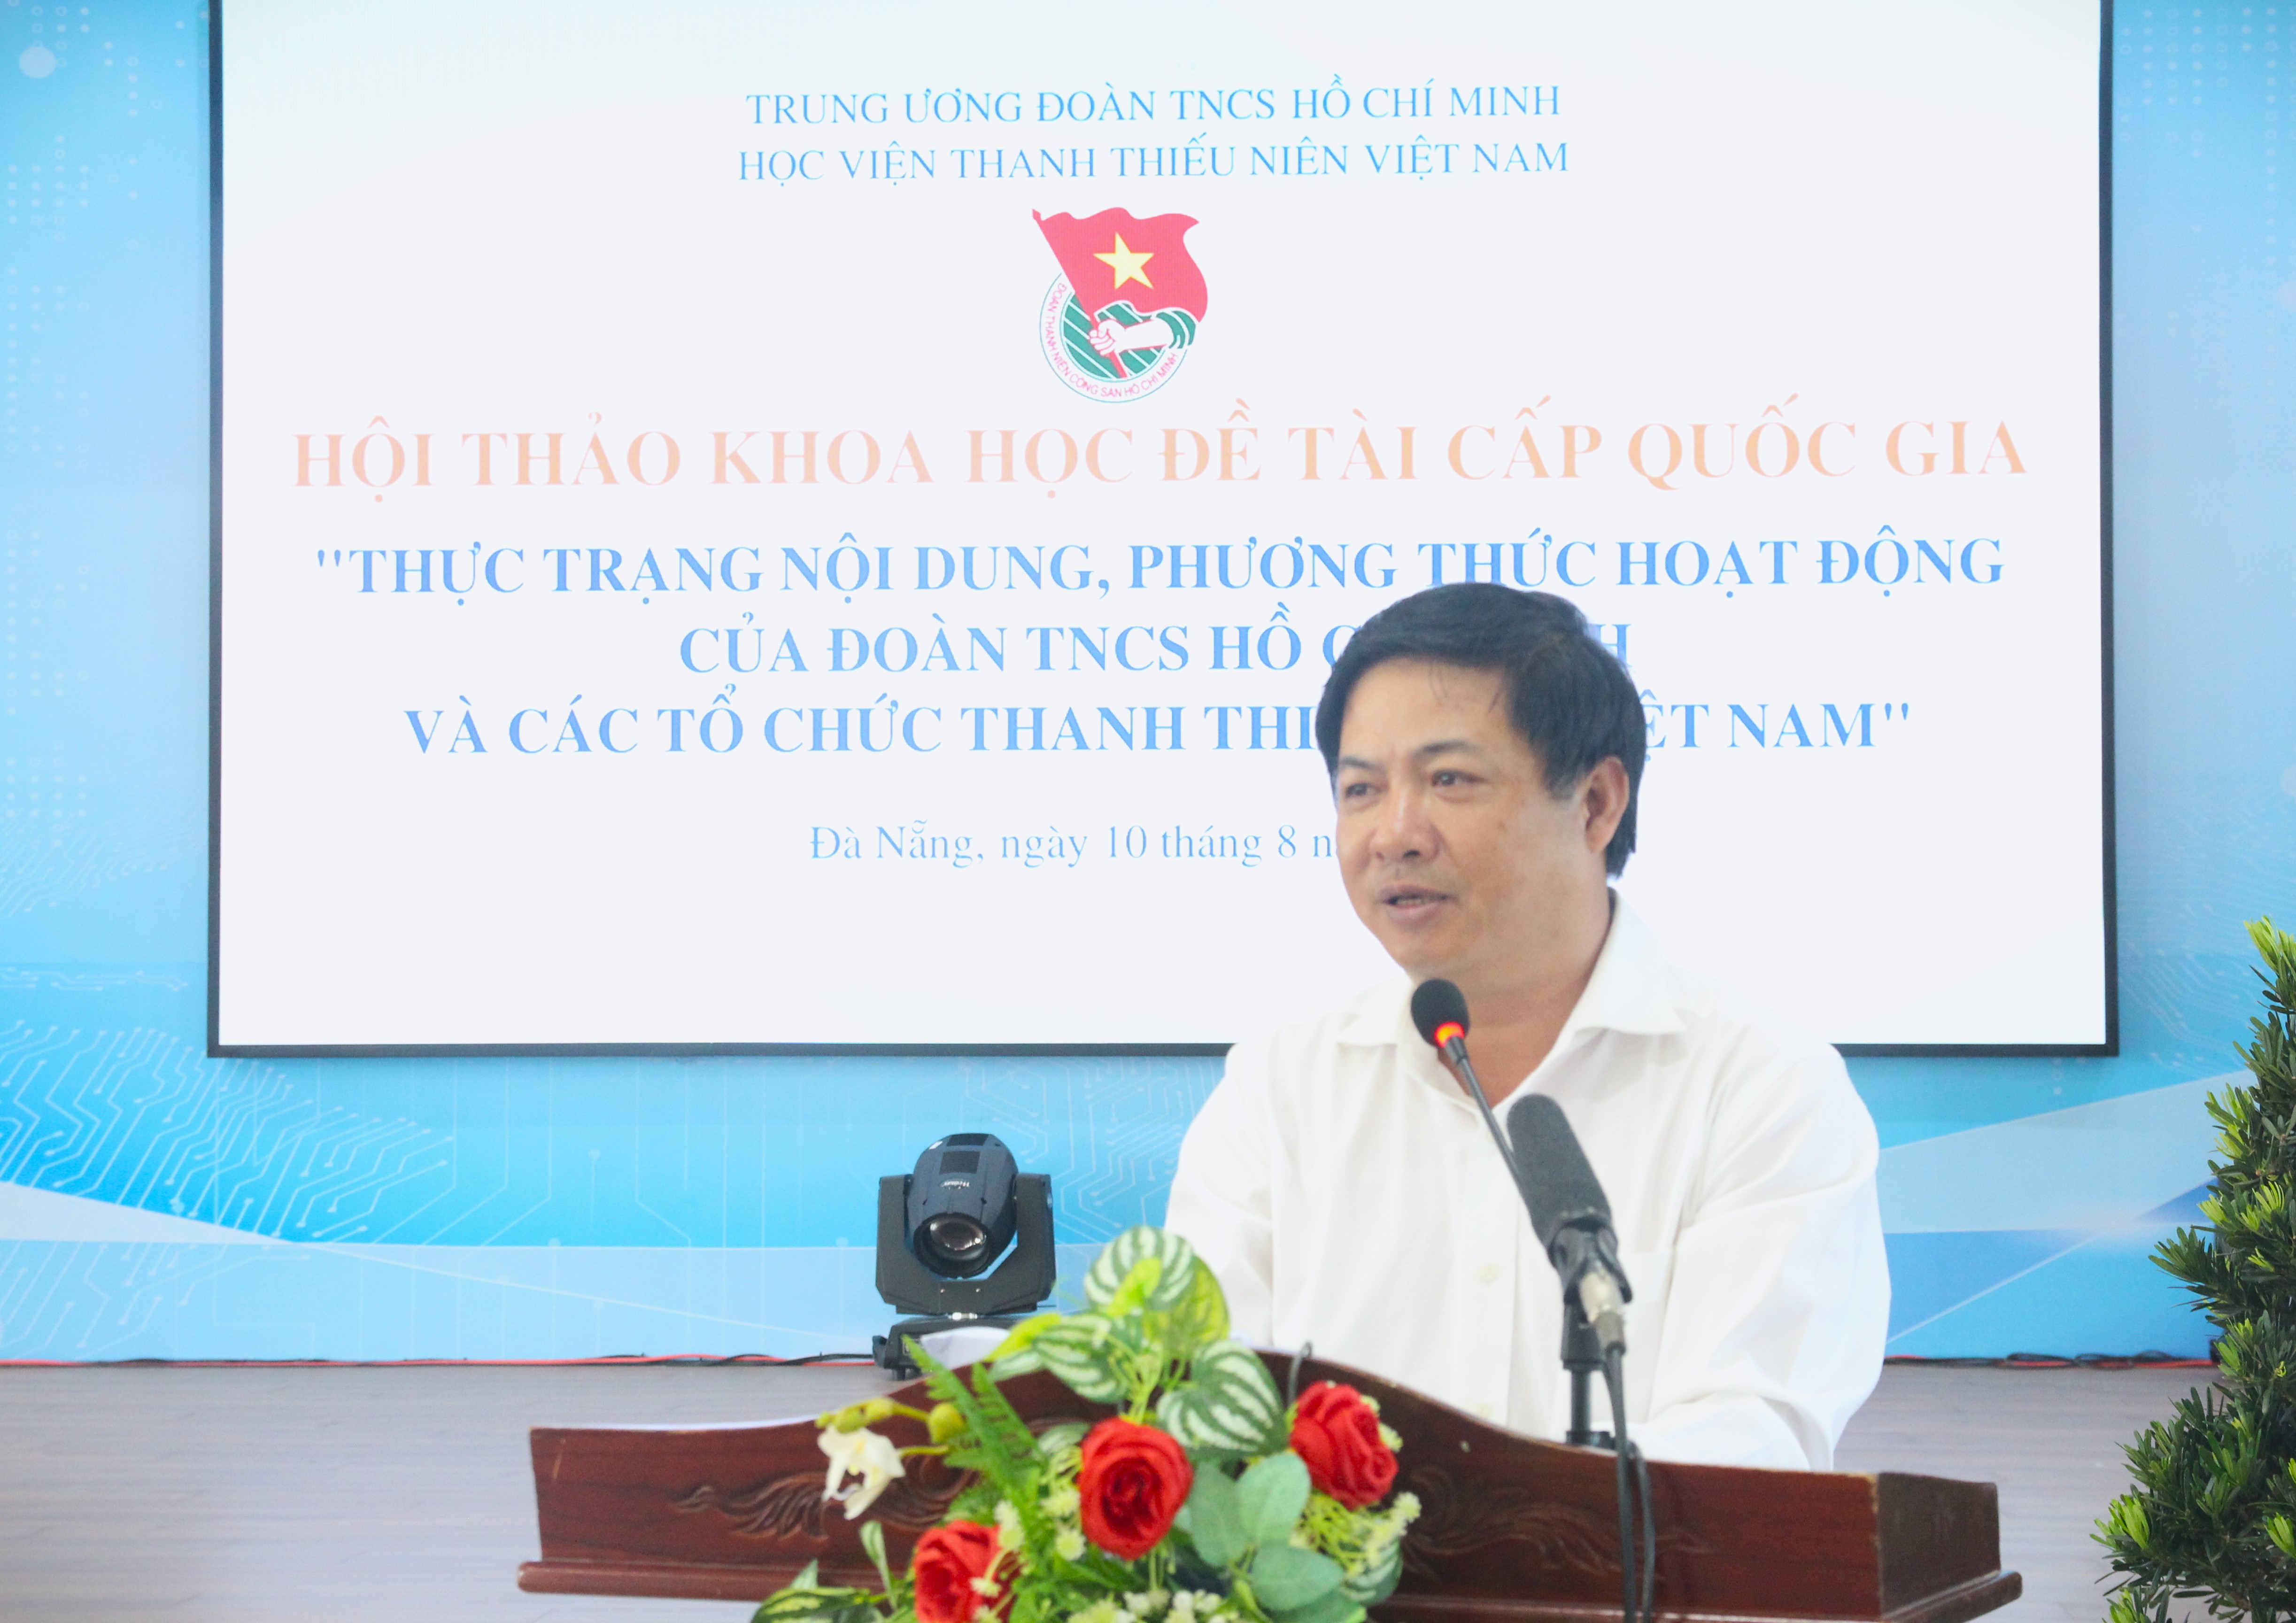 Tăng cường sự lãnh đạo của Đảng đối với Đoàn TNCS Hồ Chí Minh và các tổ chức thanh thiếu nhi